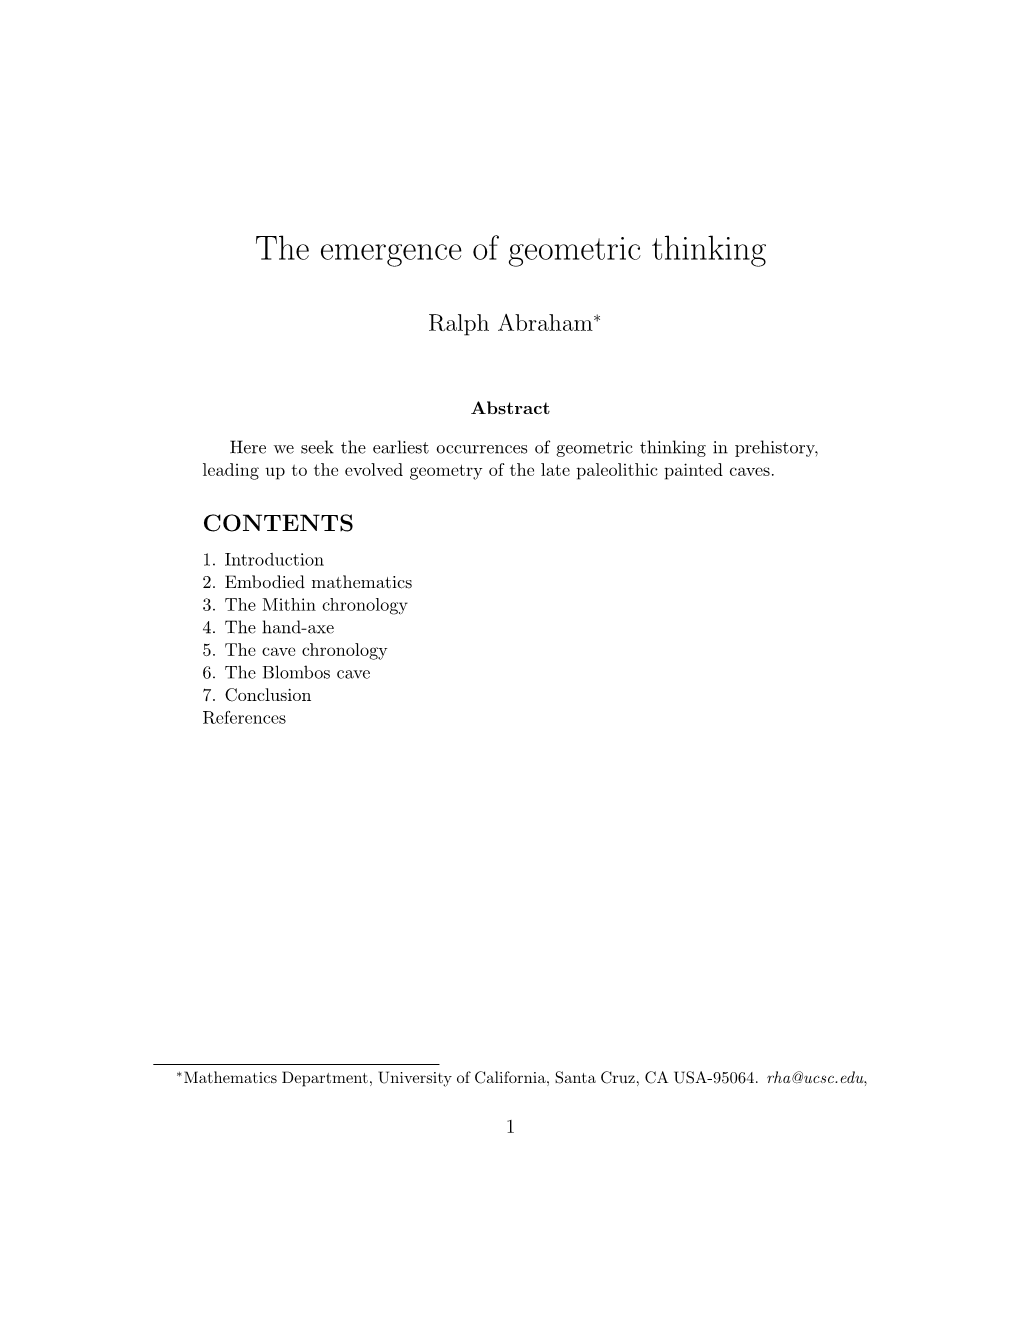 The Emergence of Geometric Thinking